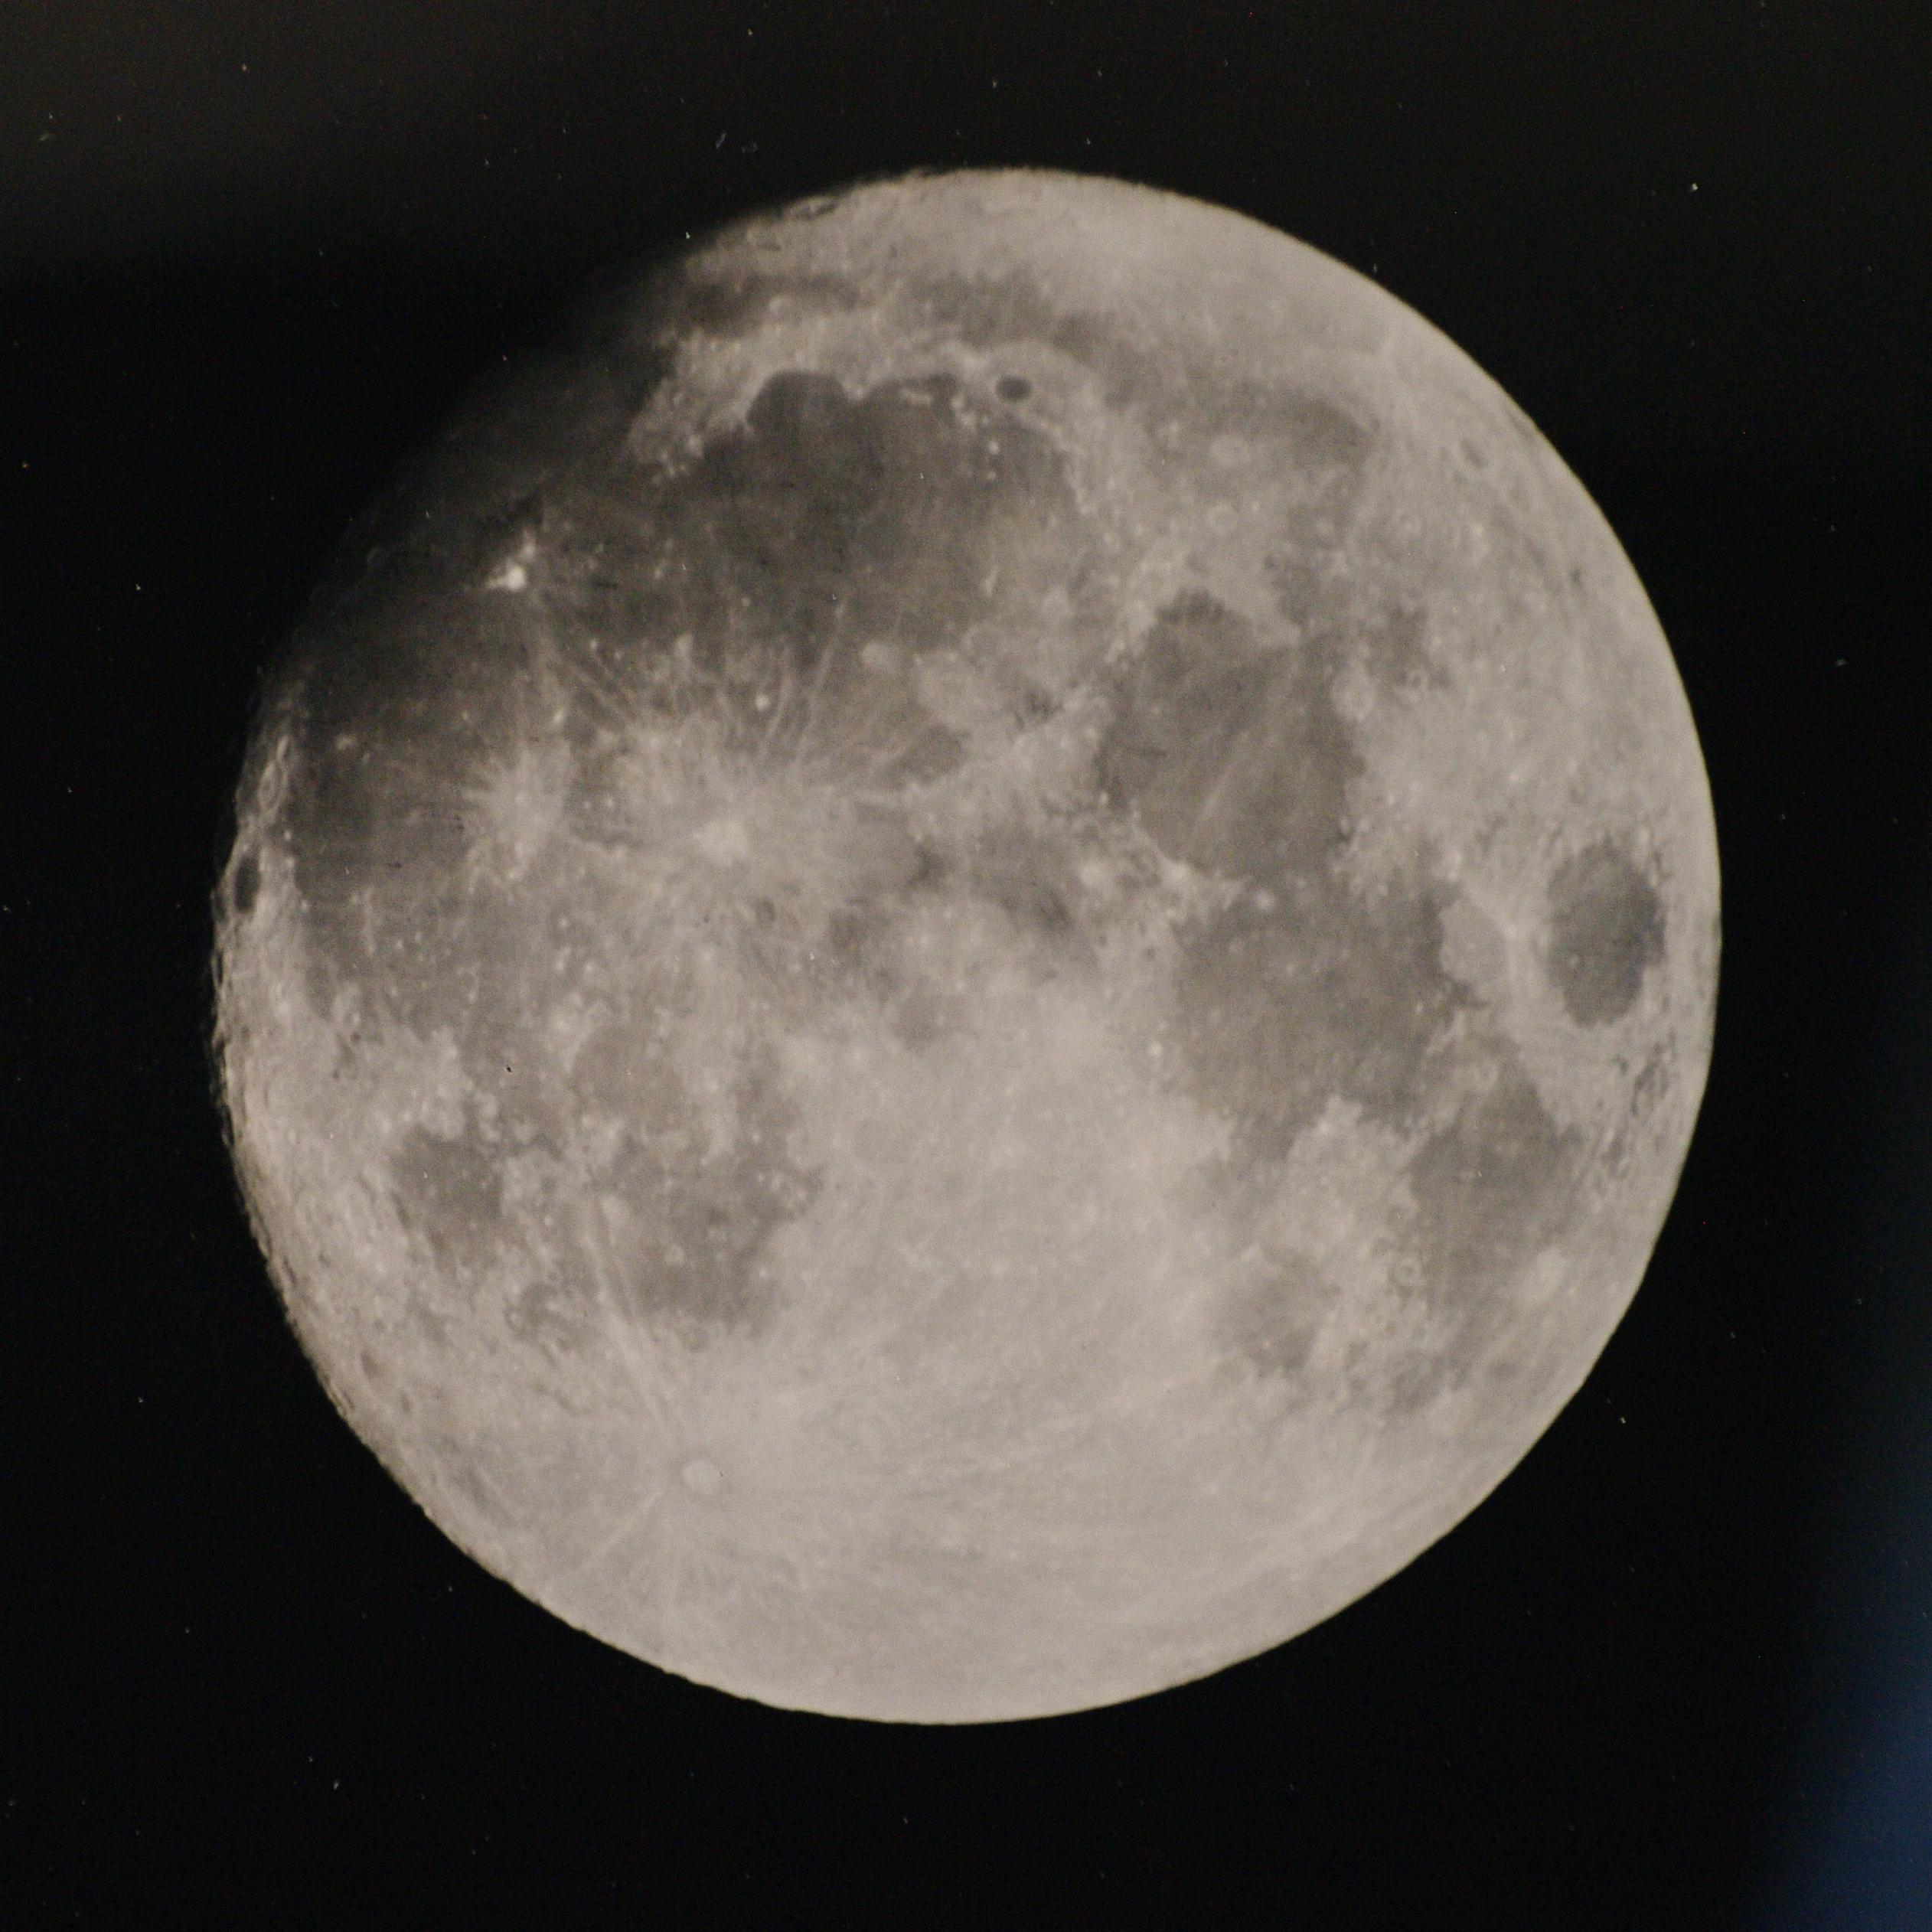 صورة للقمر في طور الأحدب المتزايد بتقنية لوح الكولوديون الرطب. القمر الذي لم يكتمل بعد في الجهة اليسارية العليا تظهر تفاصيله المختلفة من حفر كبيرة وأشعة صدمة وبحار.